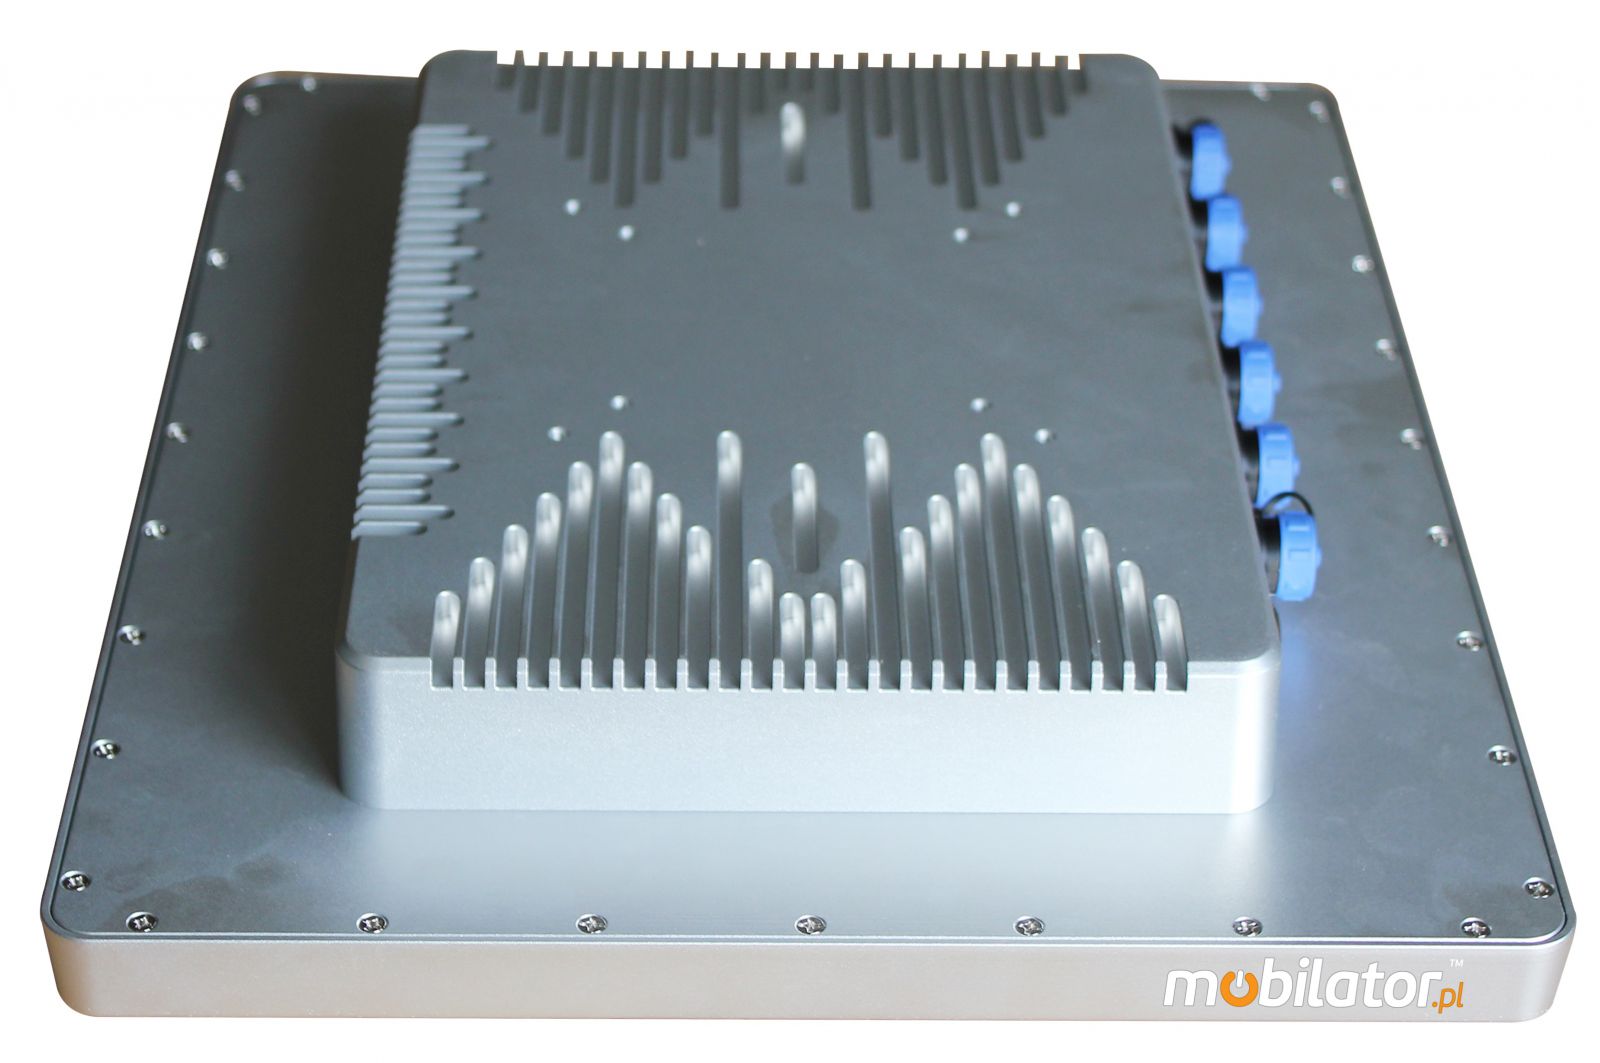 przemysowy panel operatorski panel PC komputer przemysowy odporny wodoodporny pyoodporny wstrzsoodporny wzmocniony IP69K wifi